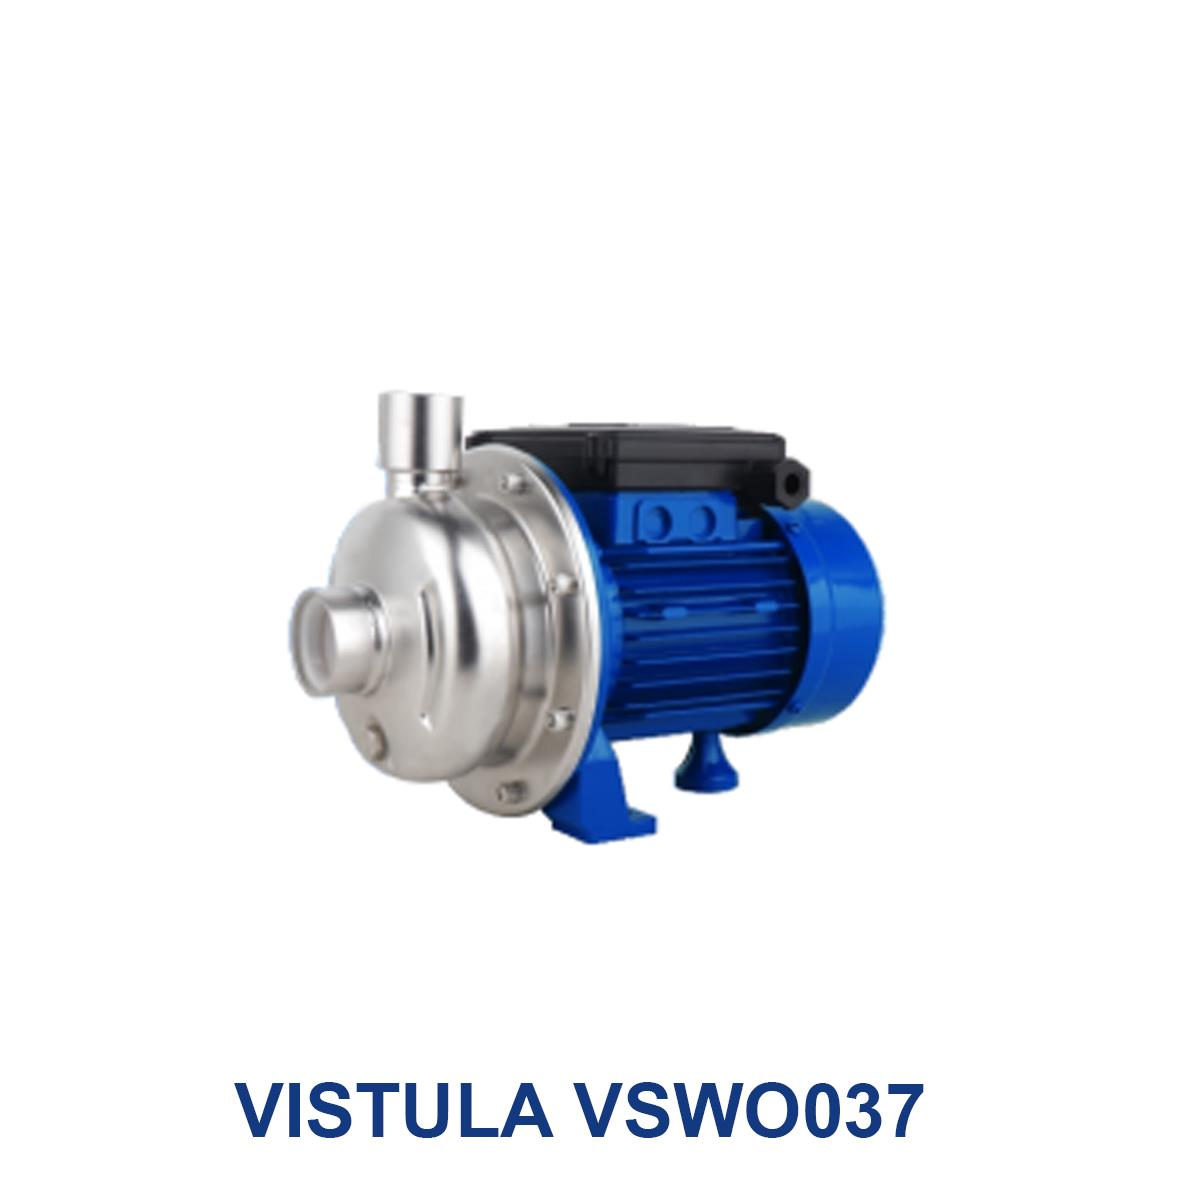 VISTULA-VSWO037